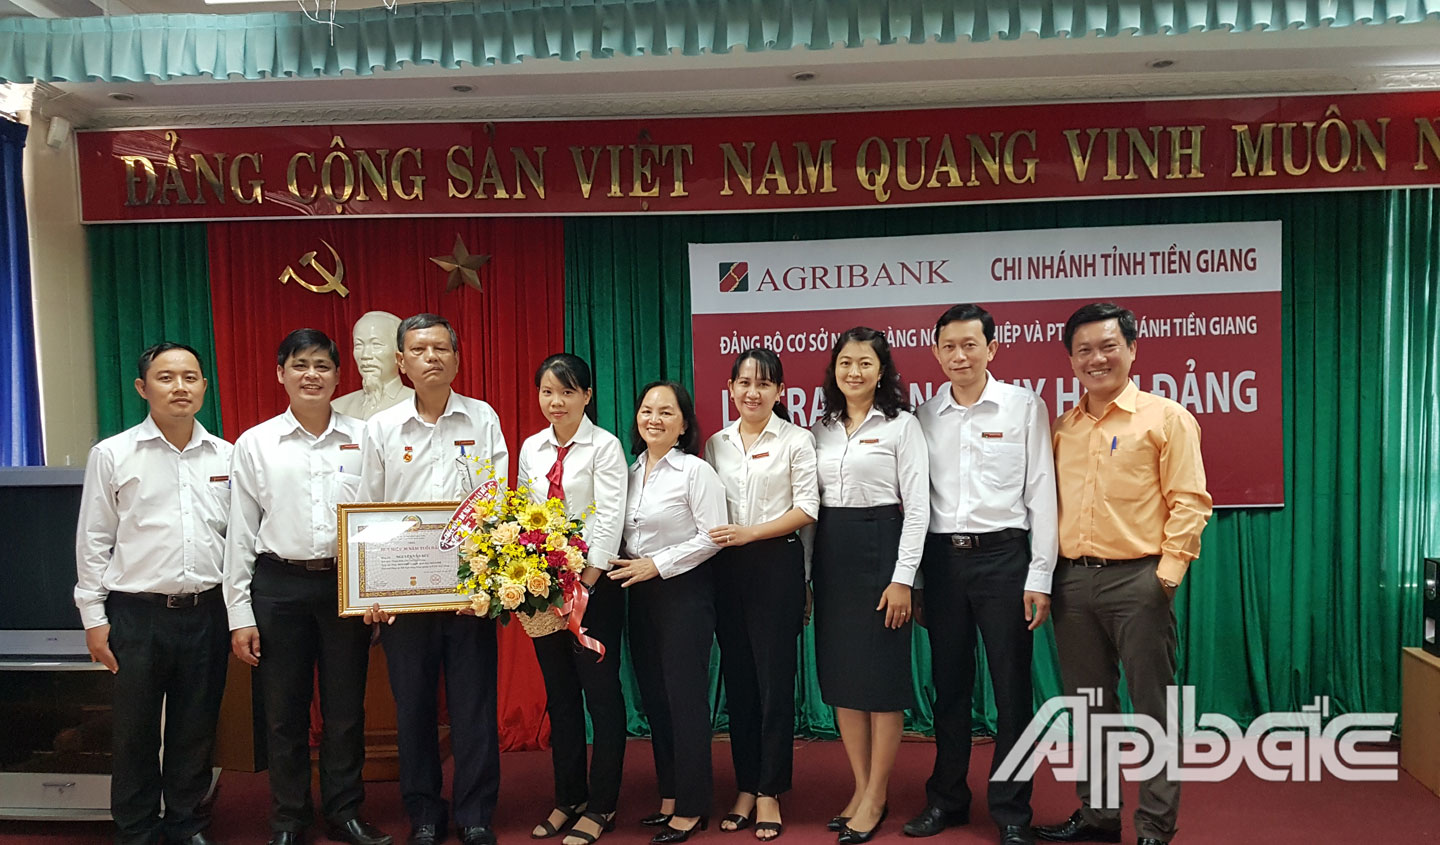 Đồng chí Nguyễn Văn Huỳnh – Bí thư Đảng bộ – trao huy hiệu cho đồng chí Nguyễn Văn Đức